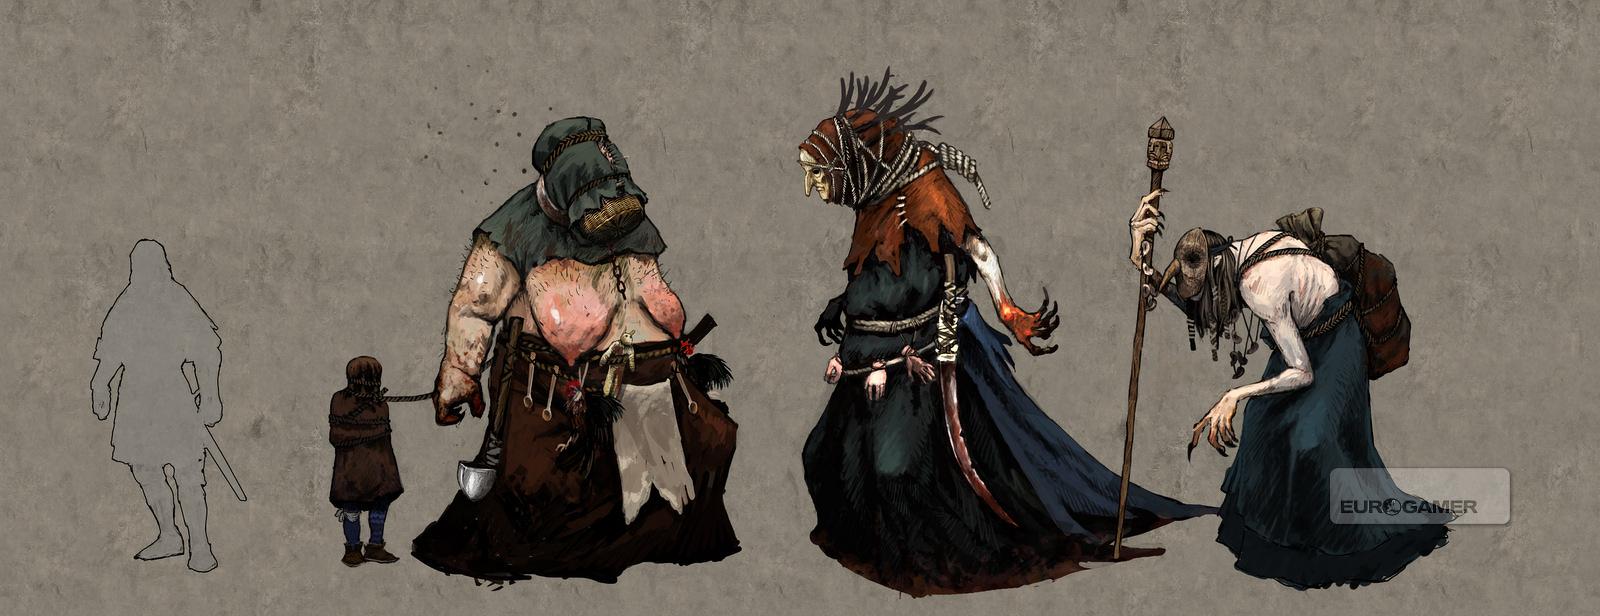 シリの初期デザインやトリスの衣装など The Witcher 3 の貴重な未公開アートワークとレンダーイメージが公開 Doope 国内外のゲーム情報サイト